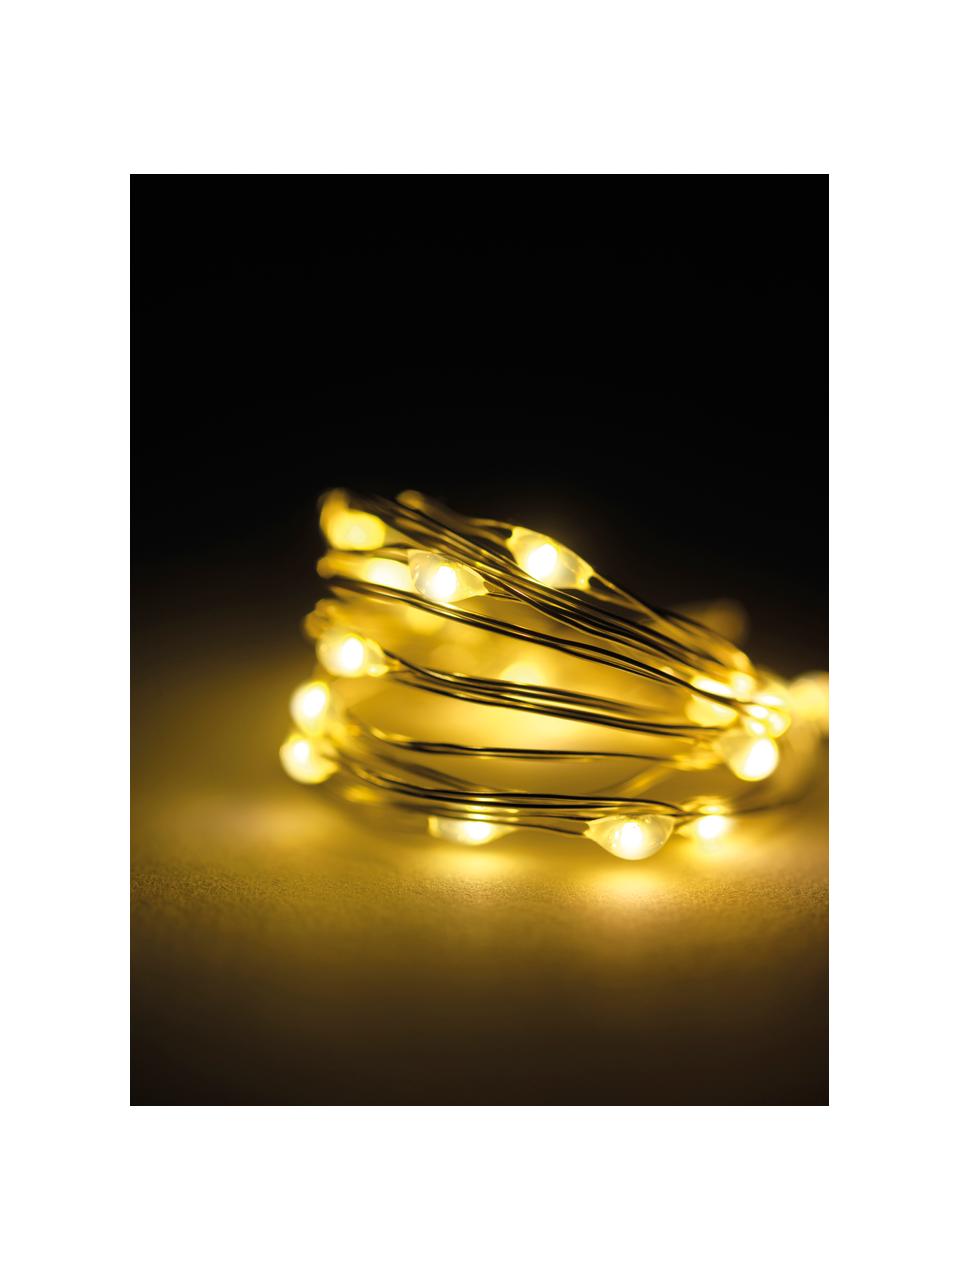 Łańcuch świetlny LED Wiry, dł. 195 cm, Tworzywo sztuczne, metal, Transparentny, D 195 cm